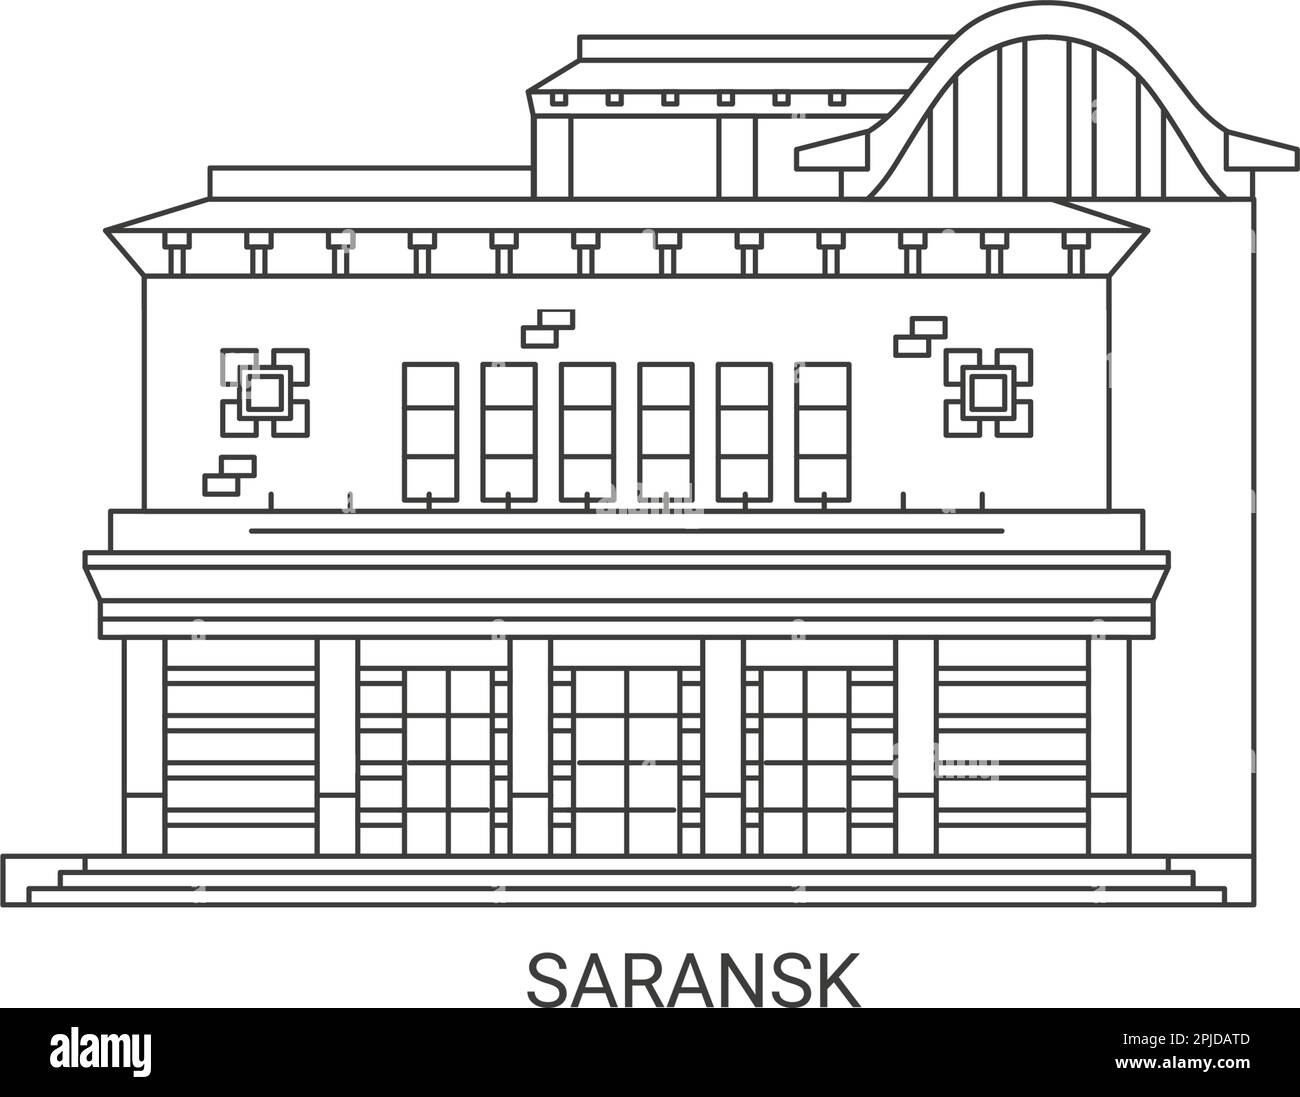 Russia, Saransk travel landmark vector illustration Stock Vector